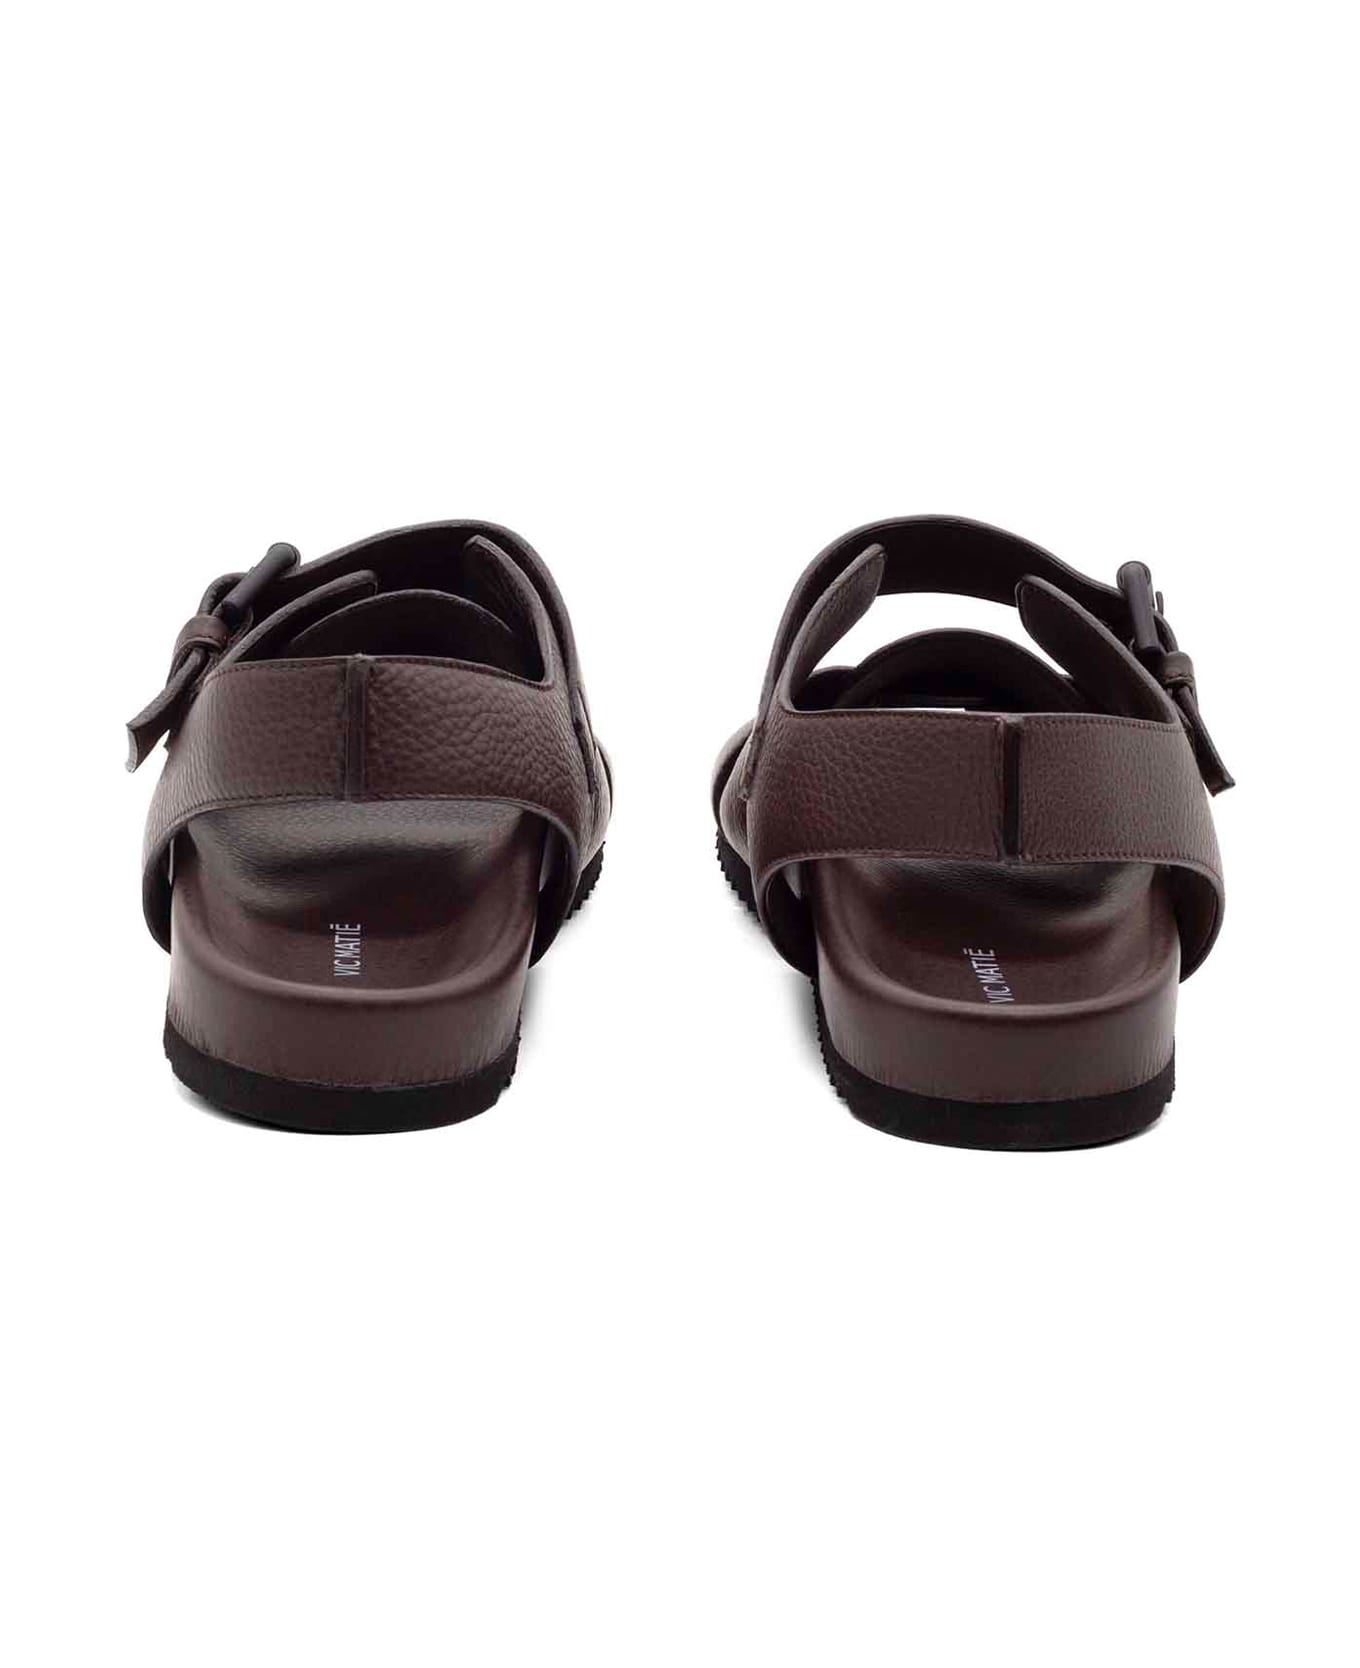 Vic Matié Men's Brown Leather Sandal - DARK BROWN